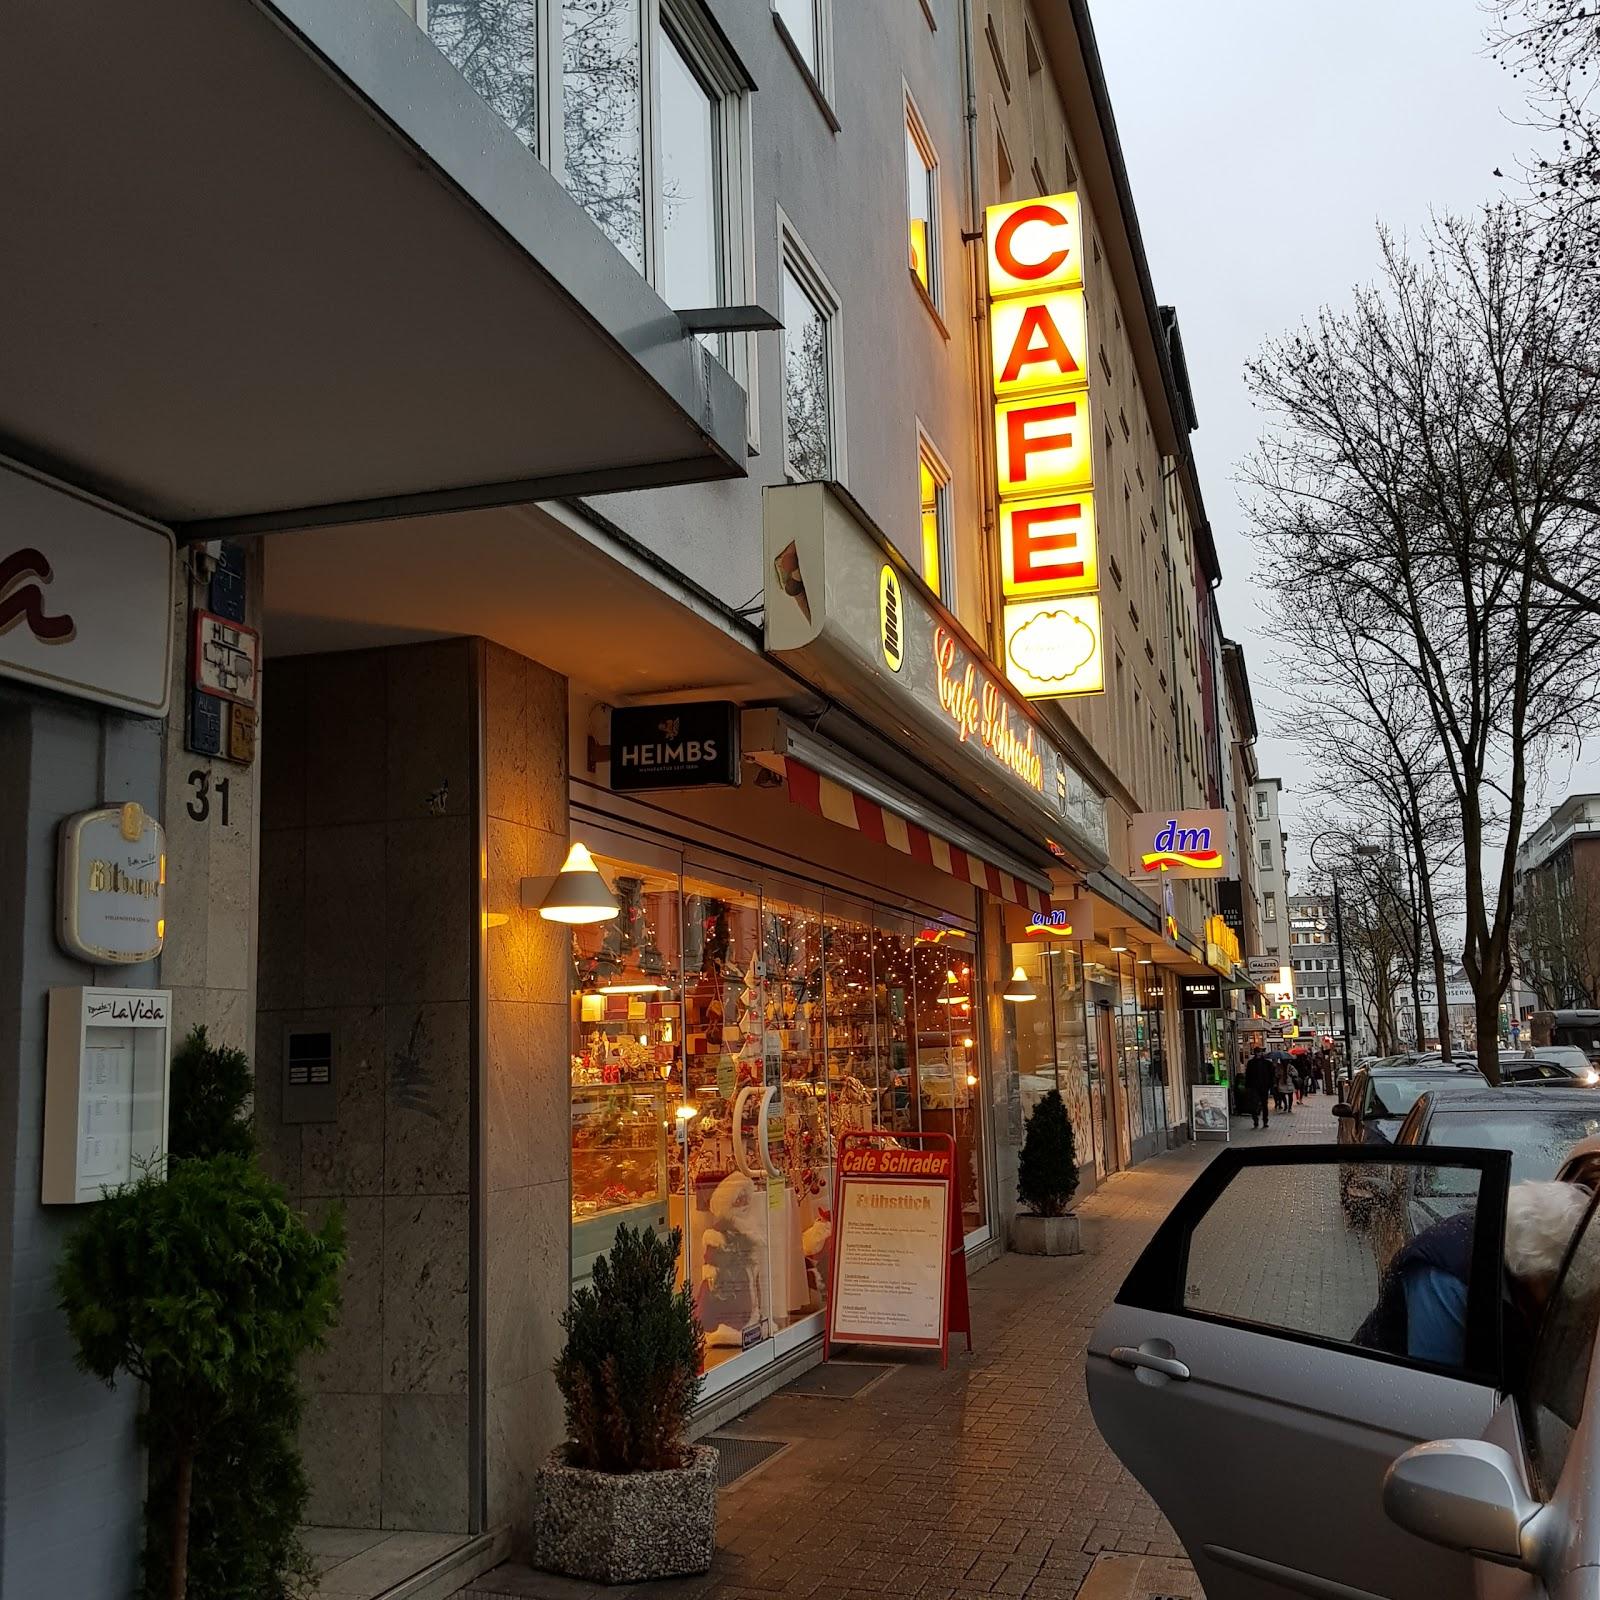 Restaurant "Cafe Schrader GmbH" in Dortmund